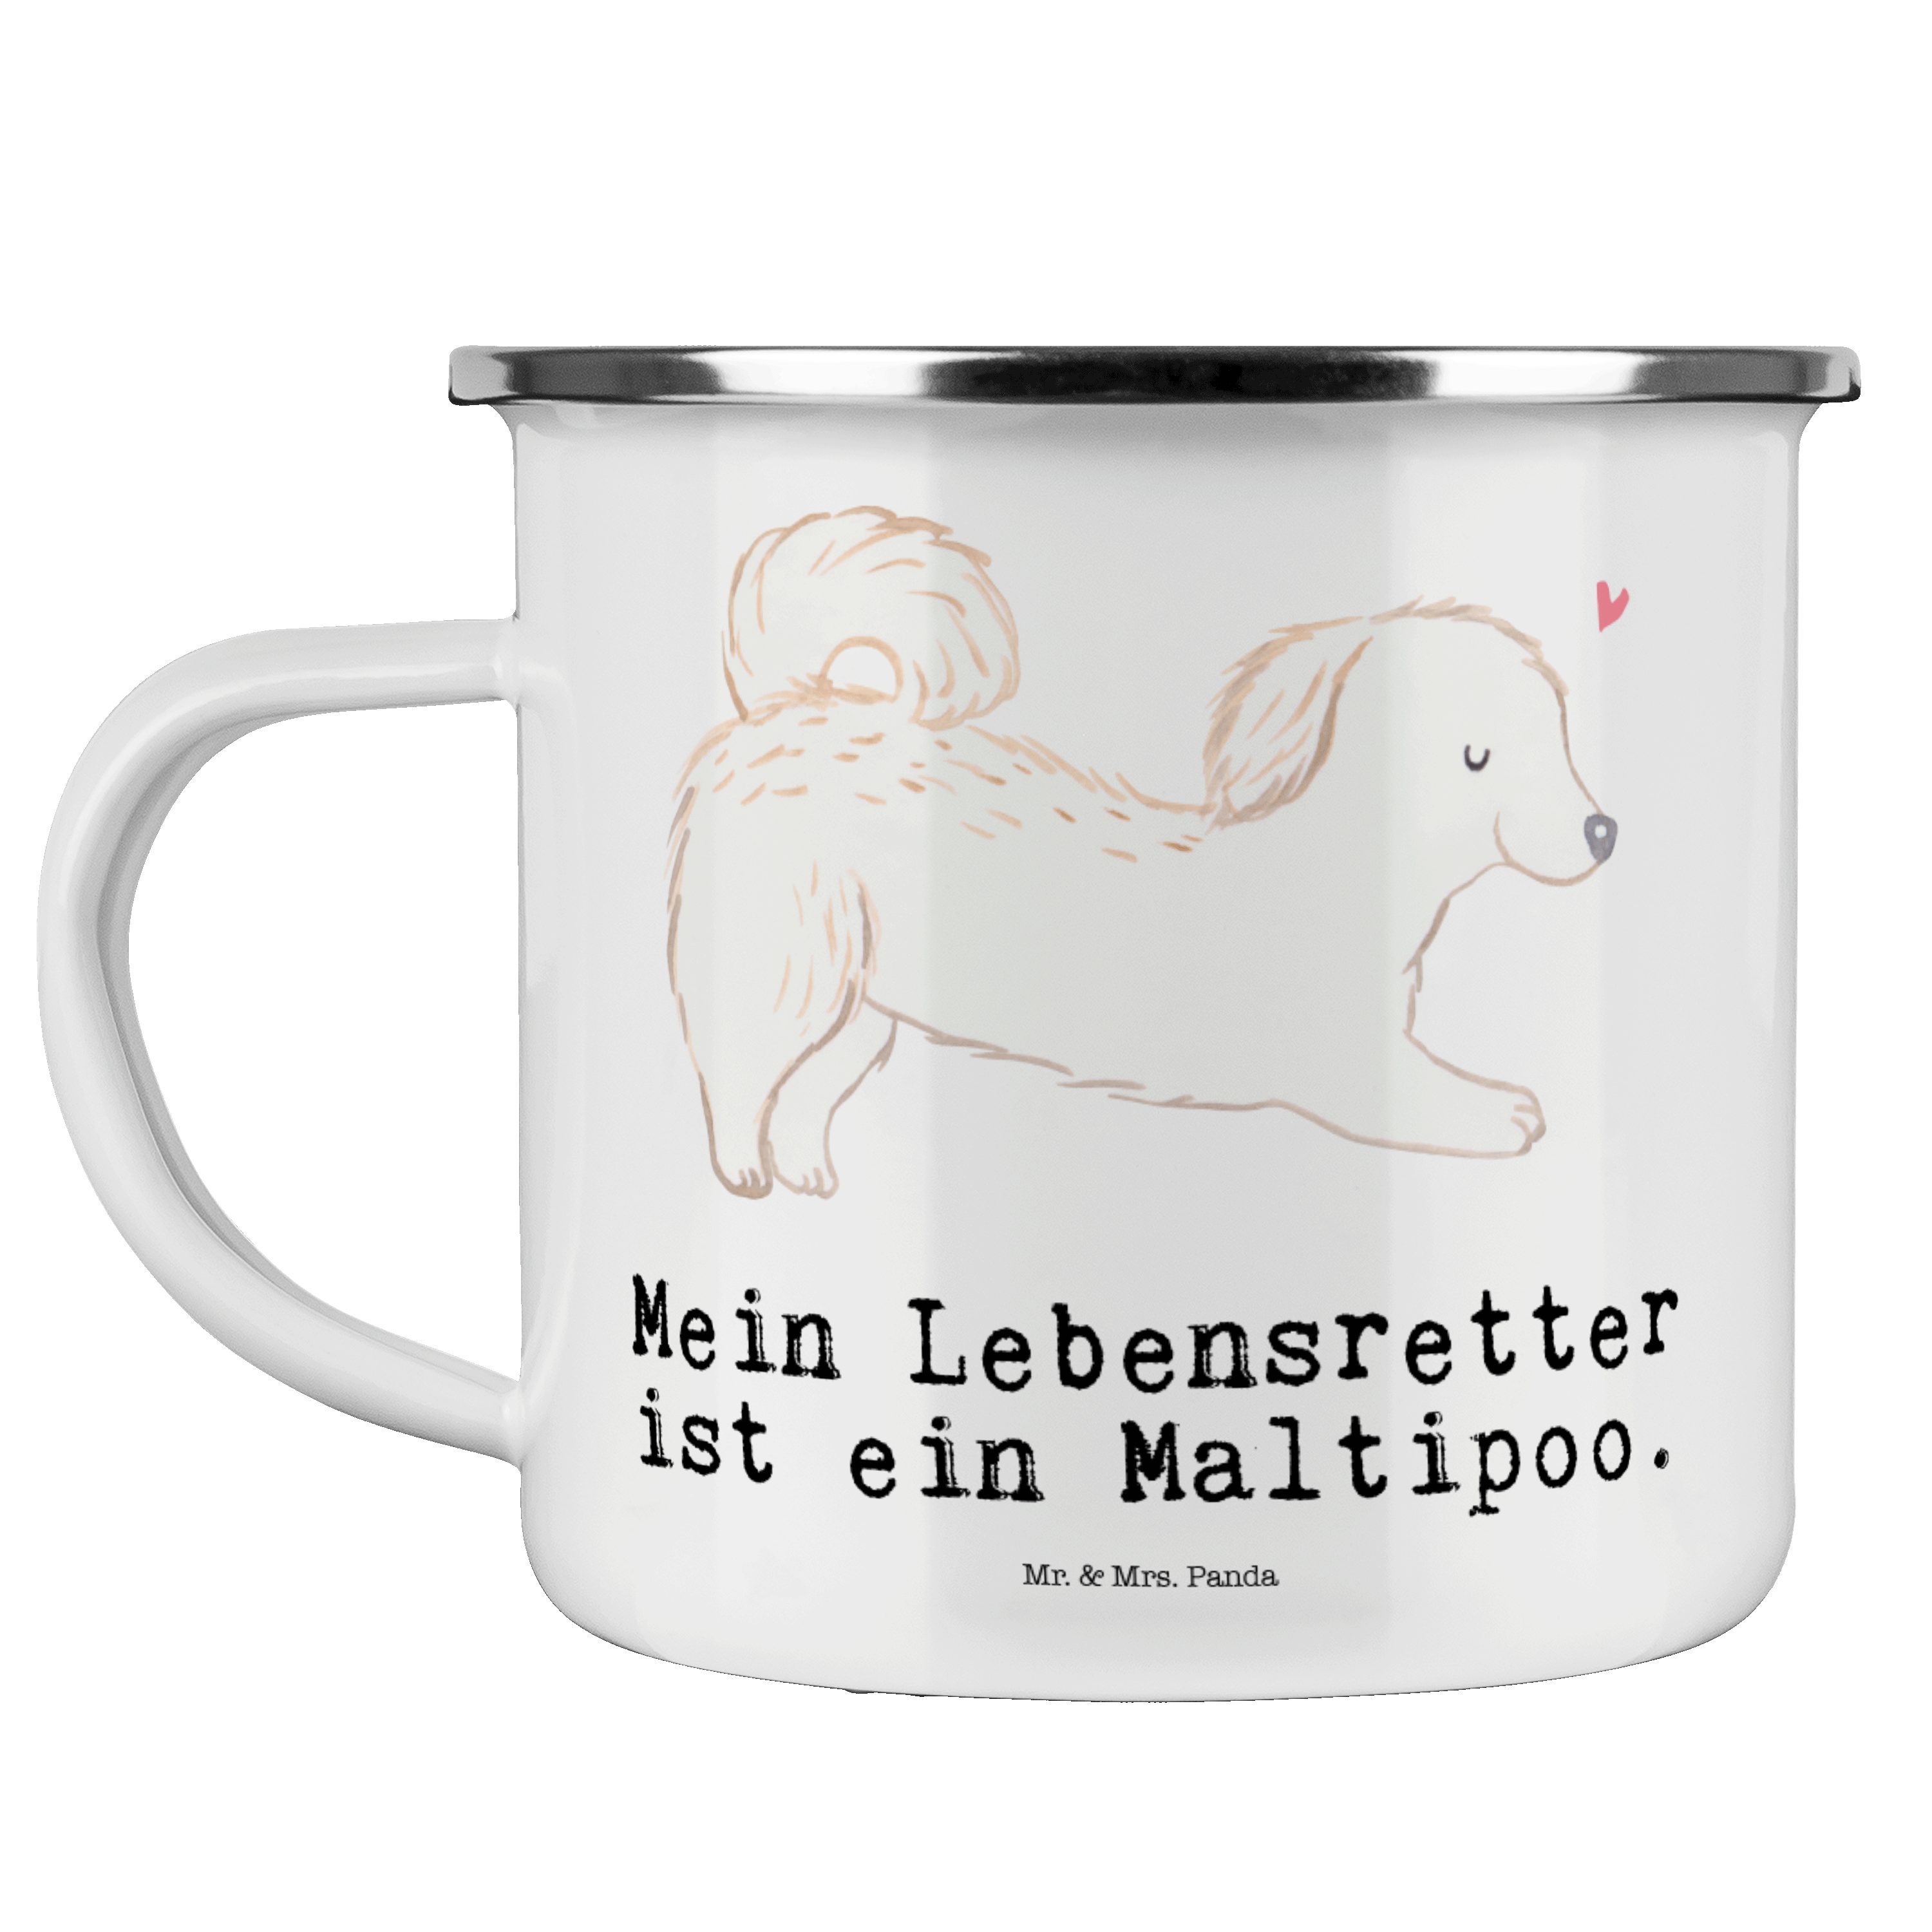 Mr. & Mrs. Panda Becher Maltipoo Lebensretter - Weiß - Geschenk, Kreuzung, Mischling, Camping, Emaille